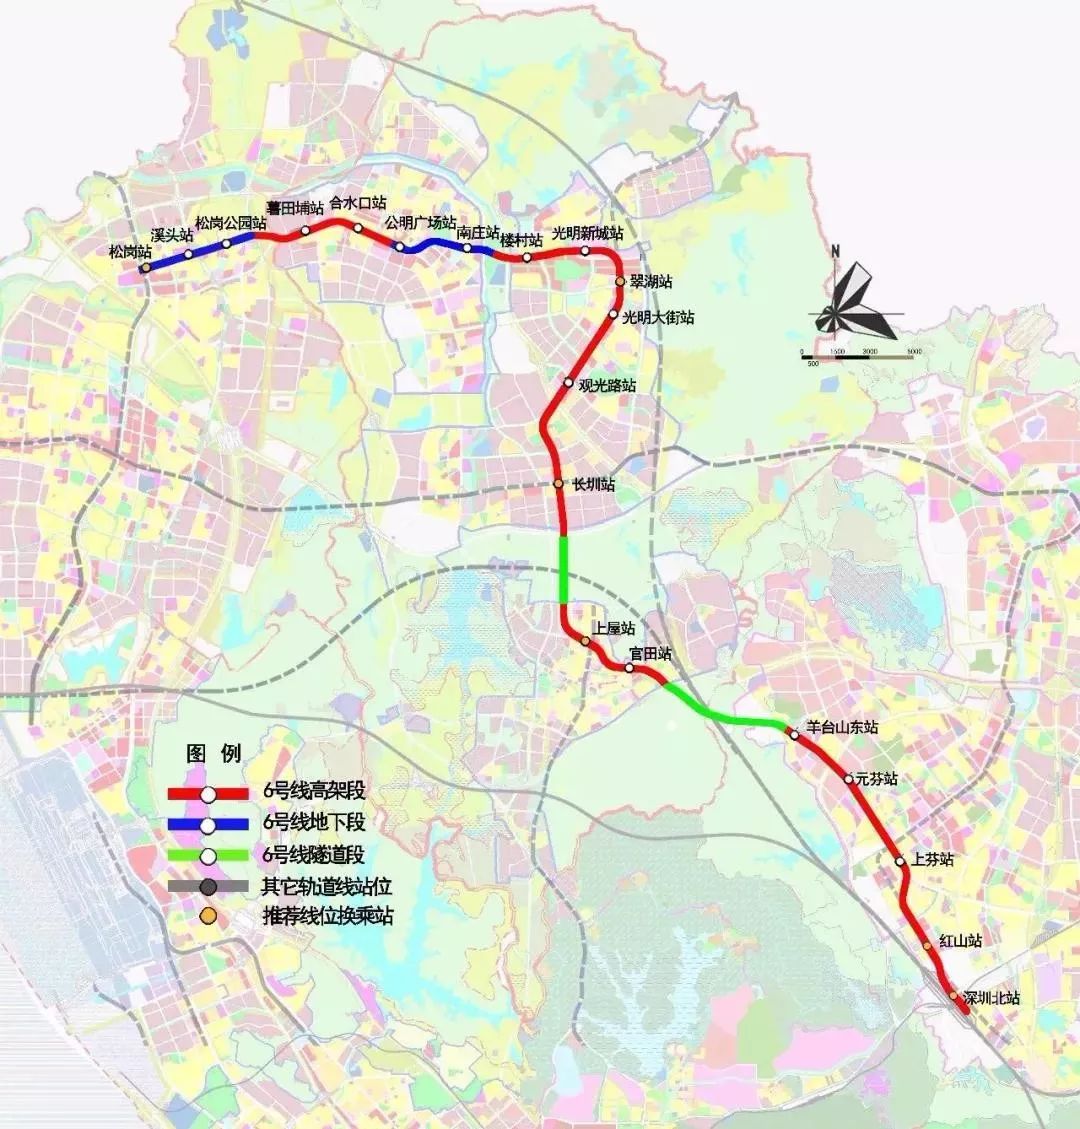 6号线一期线路起自深圳北站,终于松岗站,并与地铁11号线换乘,连接龙华